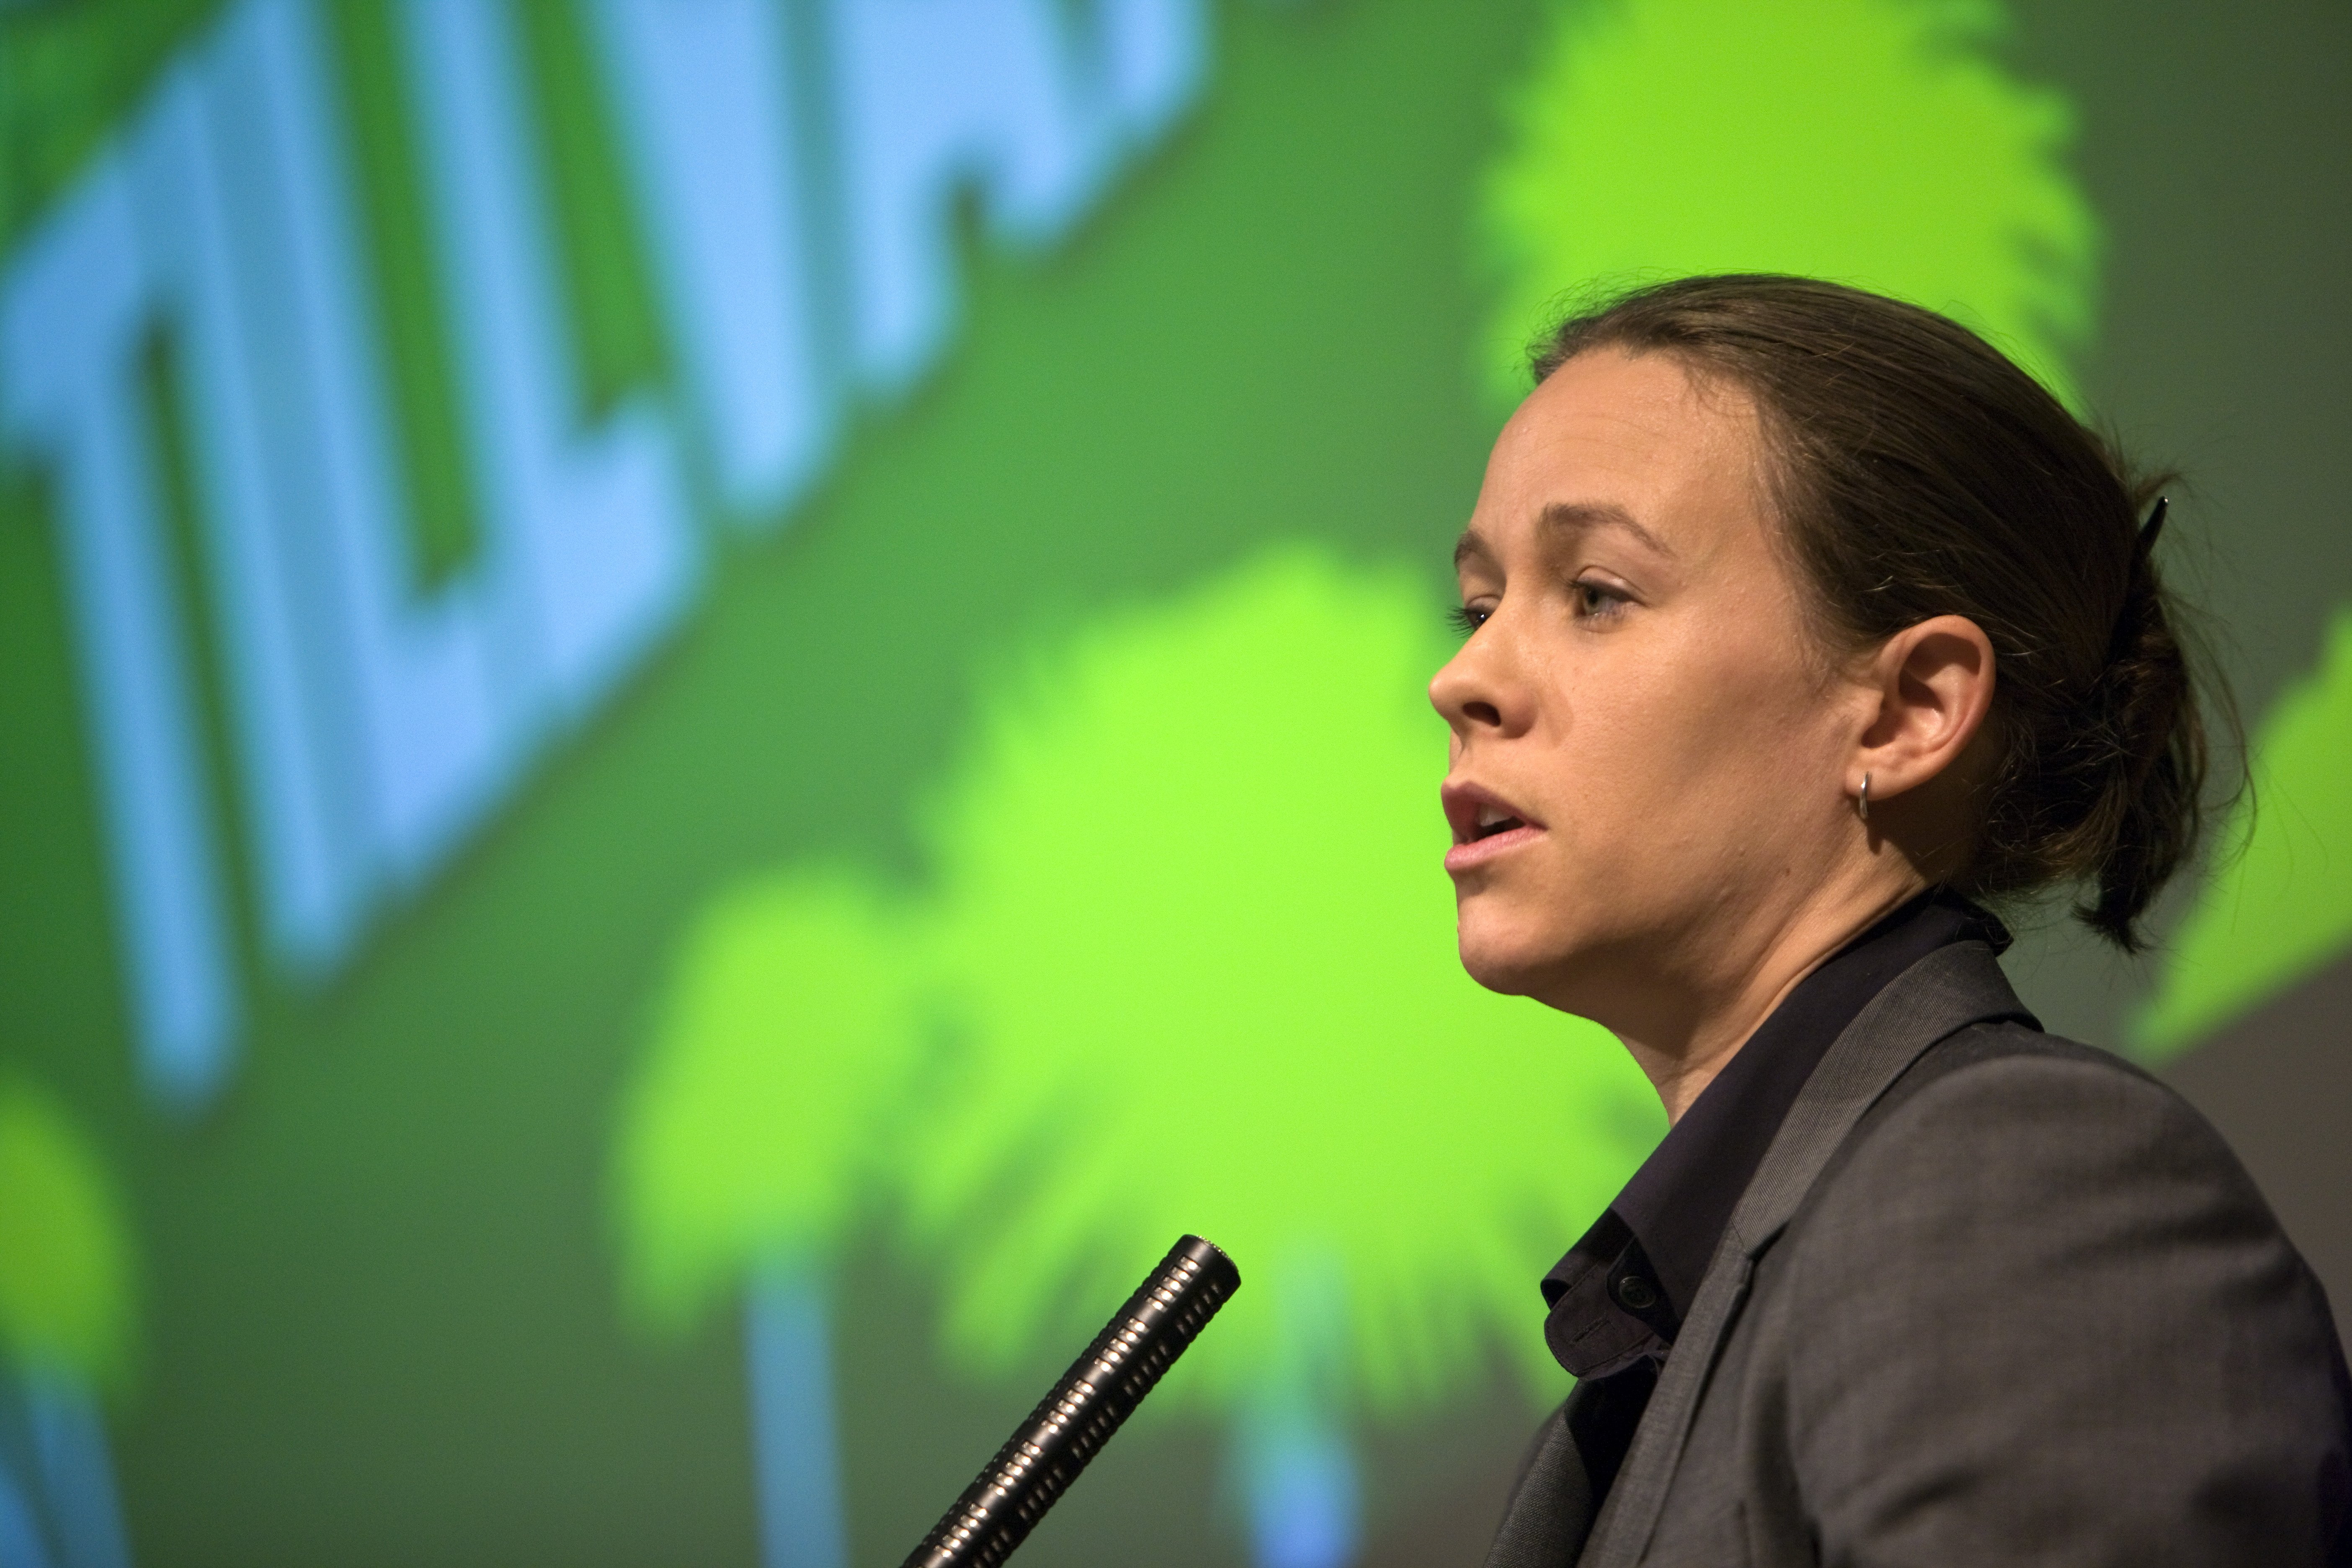 Miljöpartiets språkrör Maria Wetterstrand - miljömäktigast i Sverige.